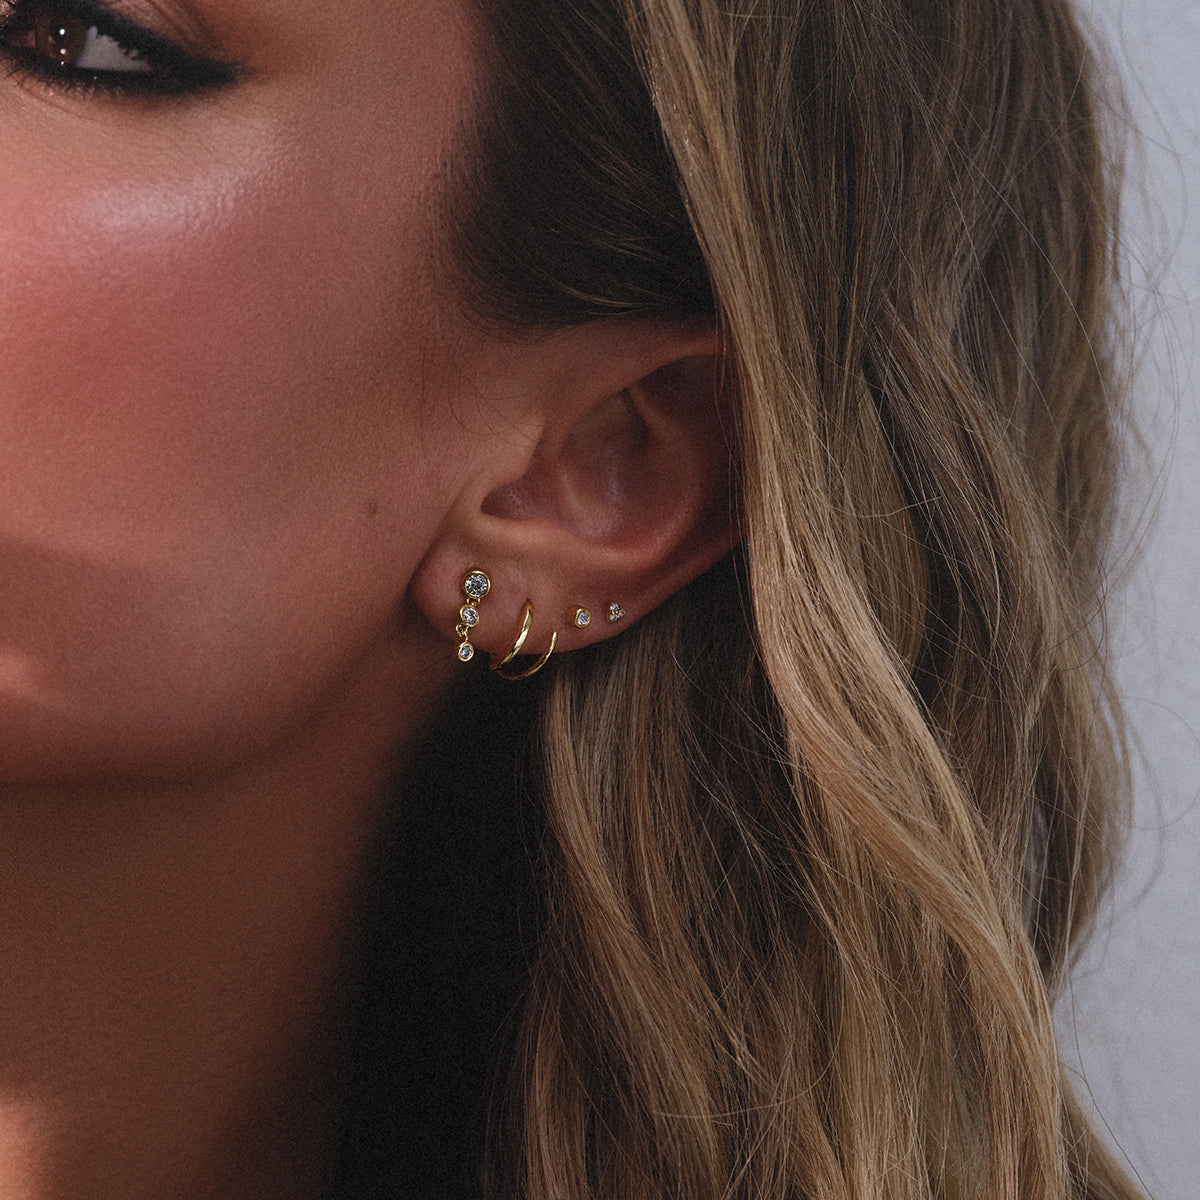 Double Piercing Earrings for Women14k Gold Filled Double Earrings for Two Holes  Second Hole Earrings Pull Through Earrings Multiple Piercing | Pricepulse